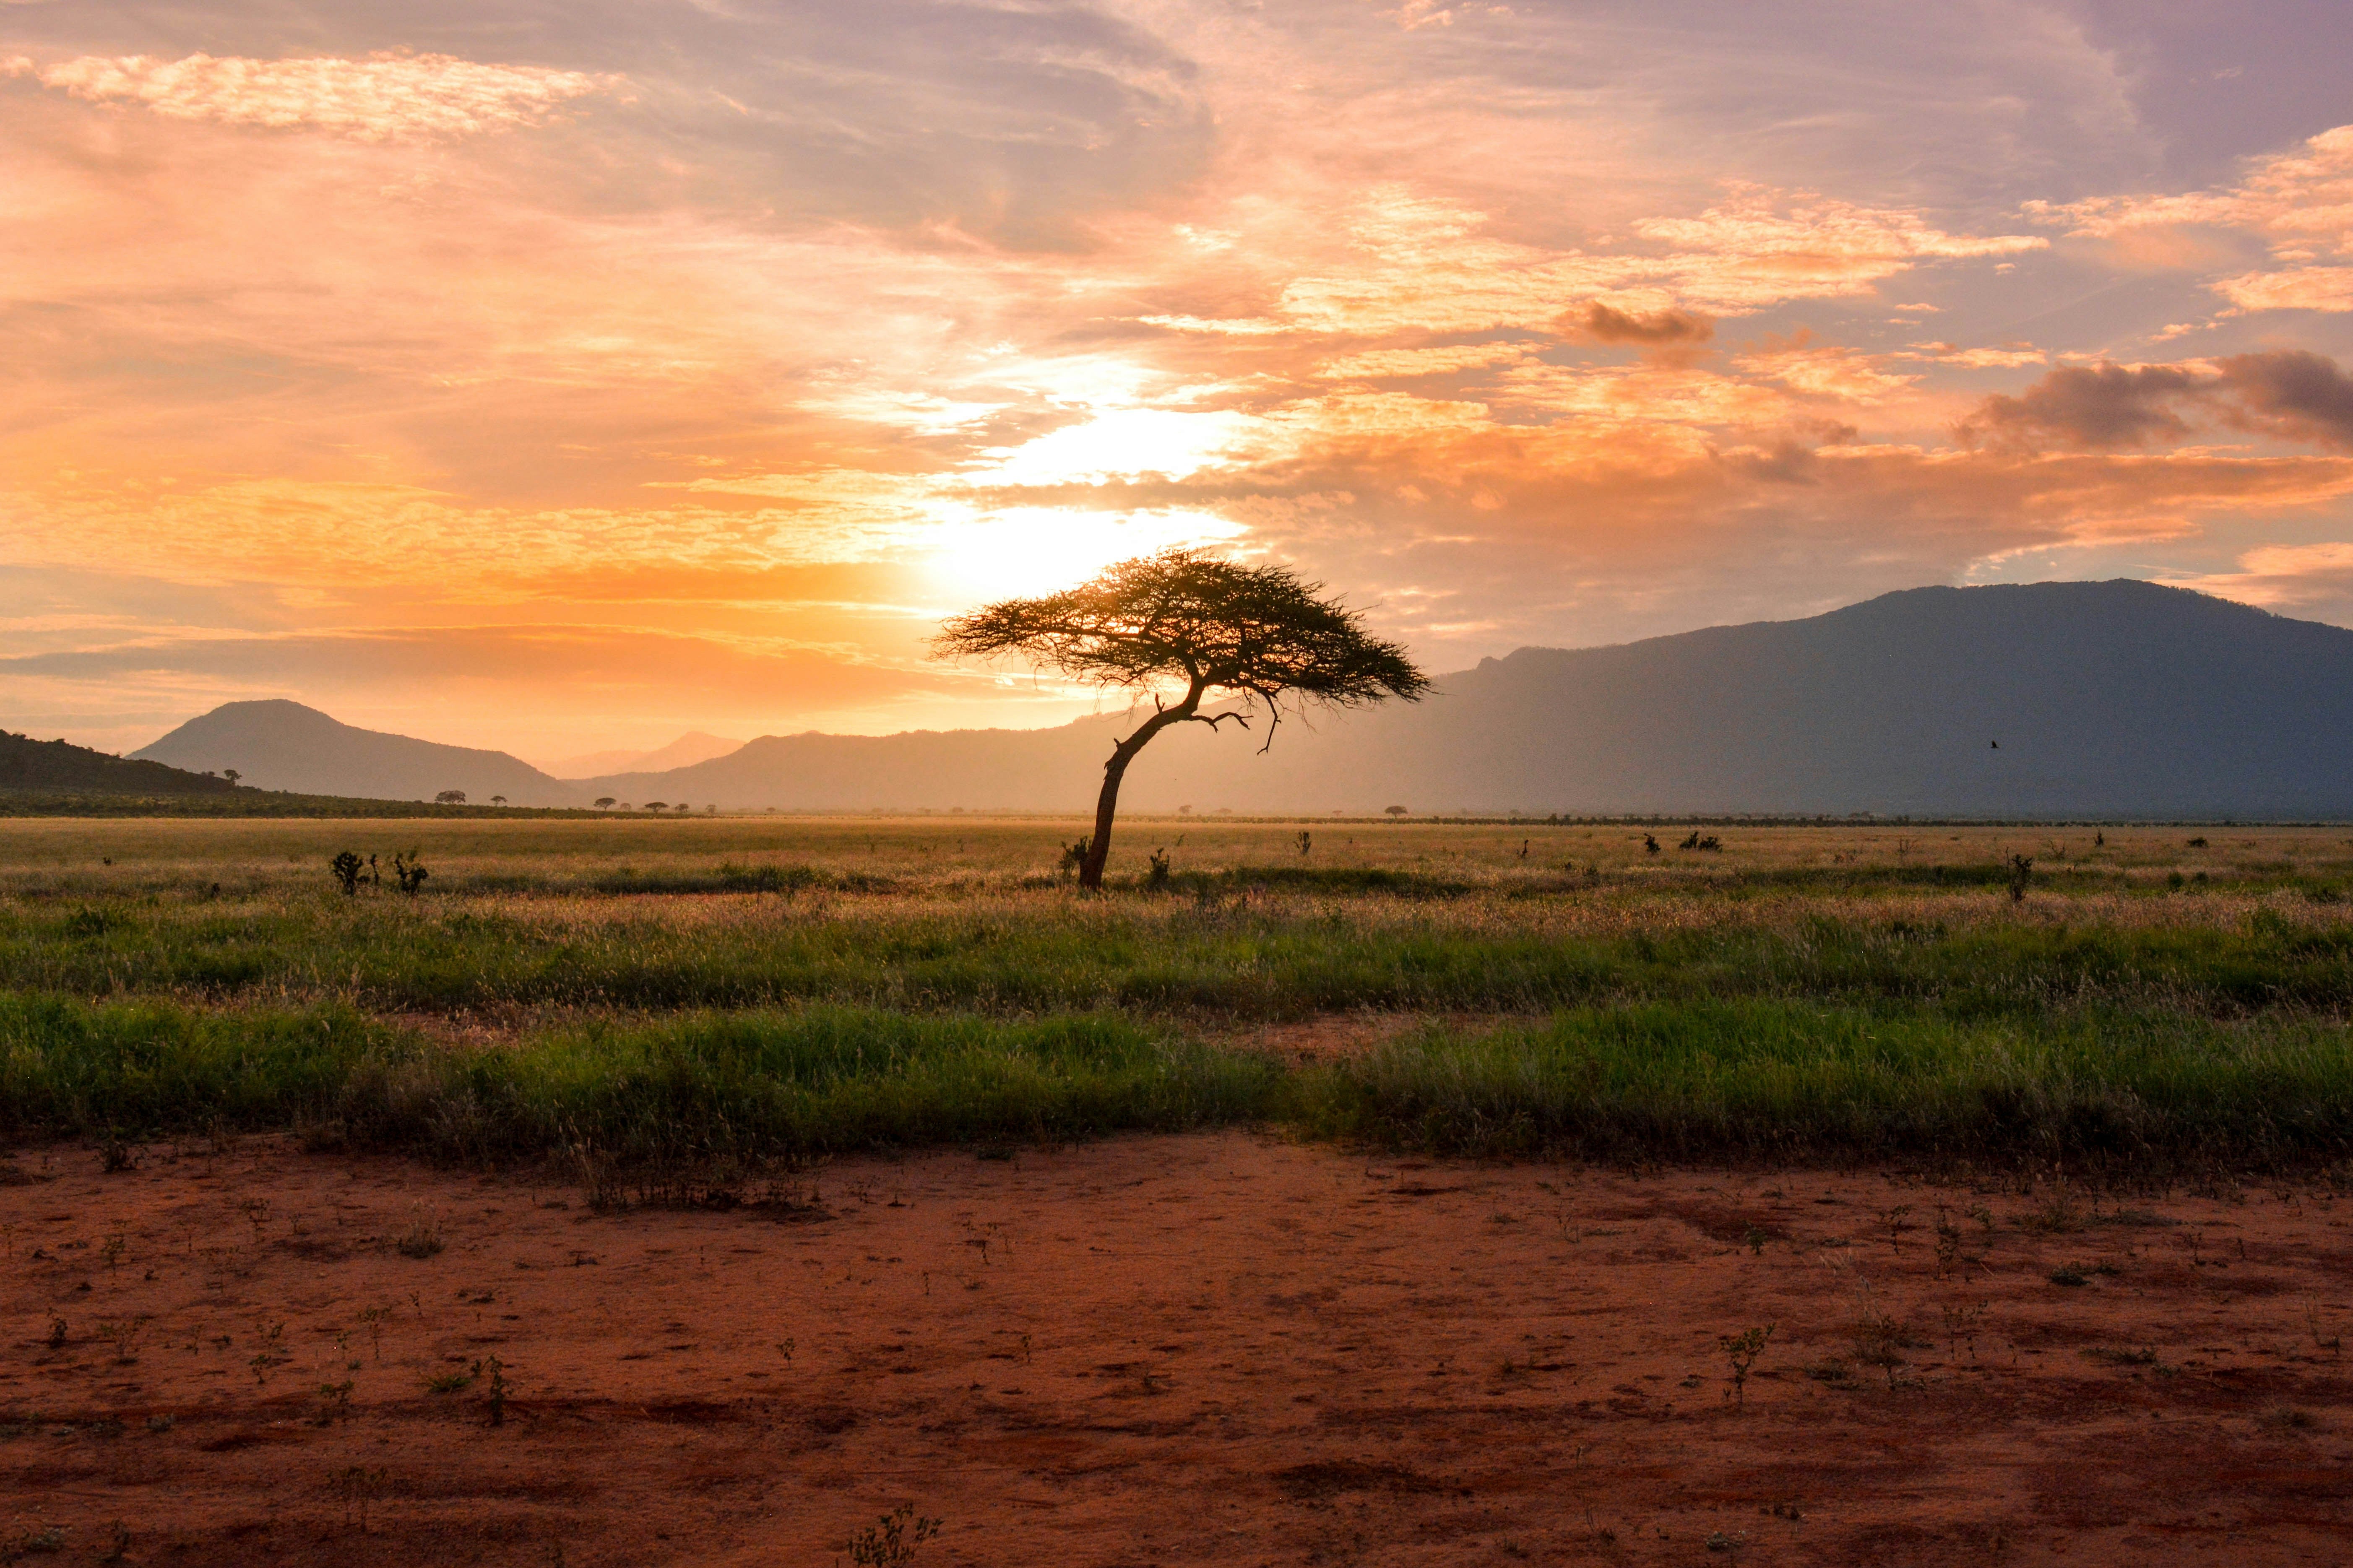 East African landscape